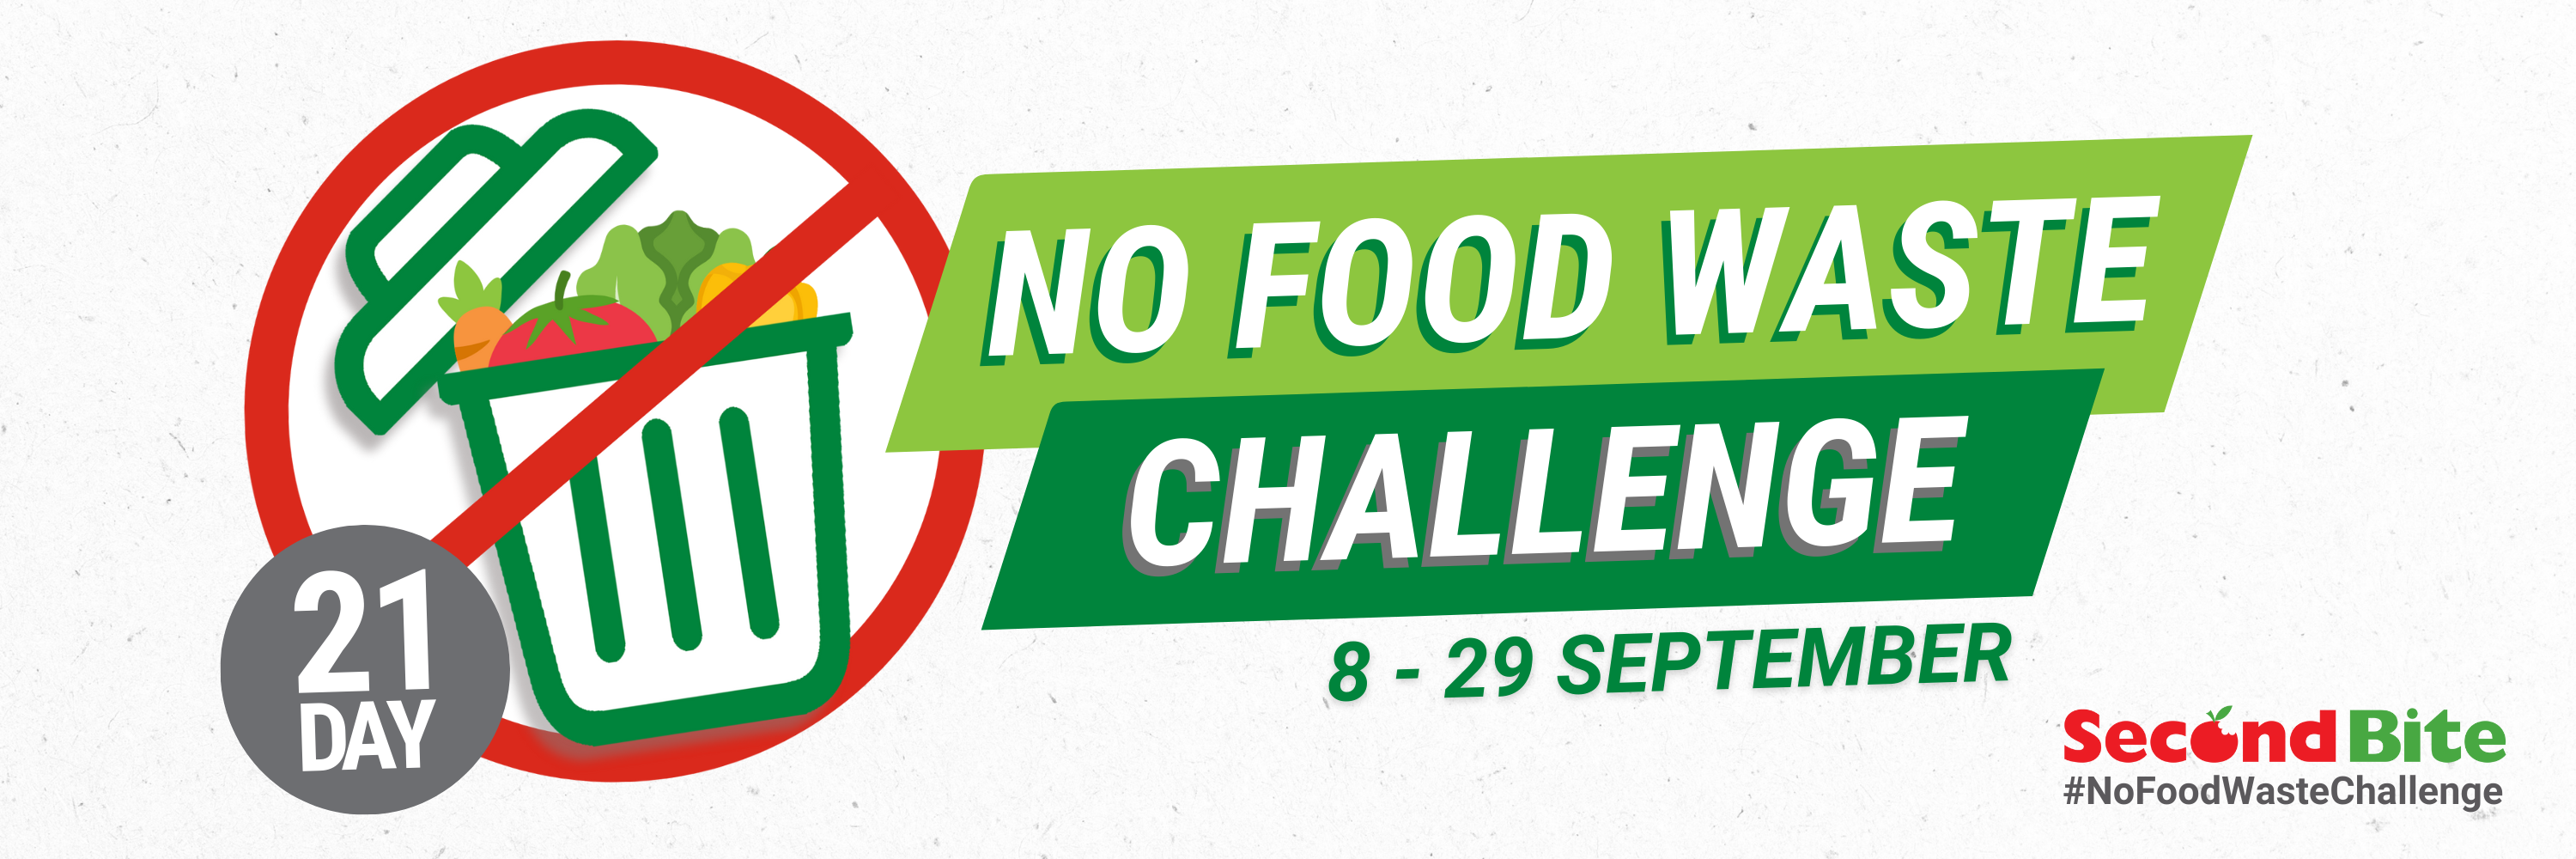 No Food Waste Challenge